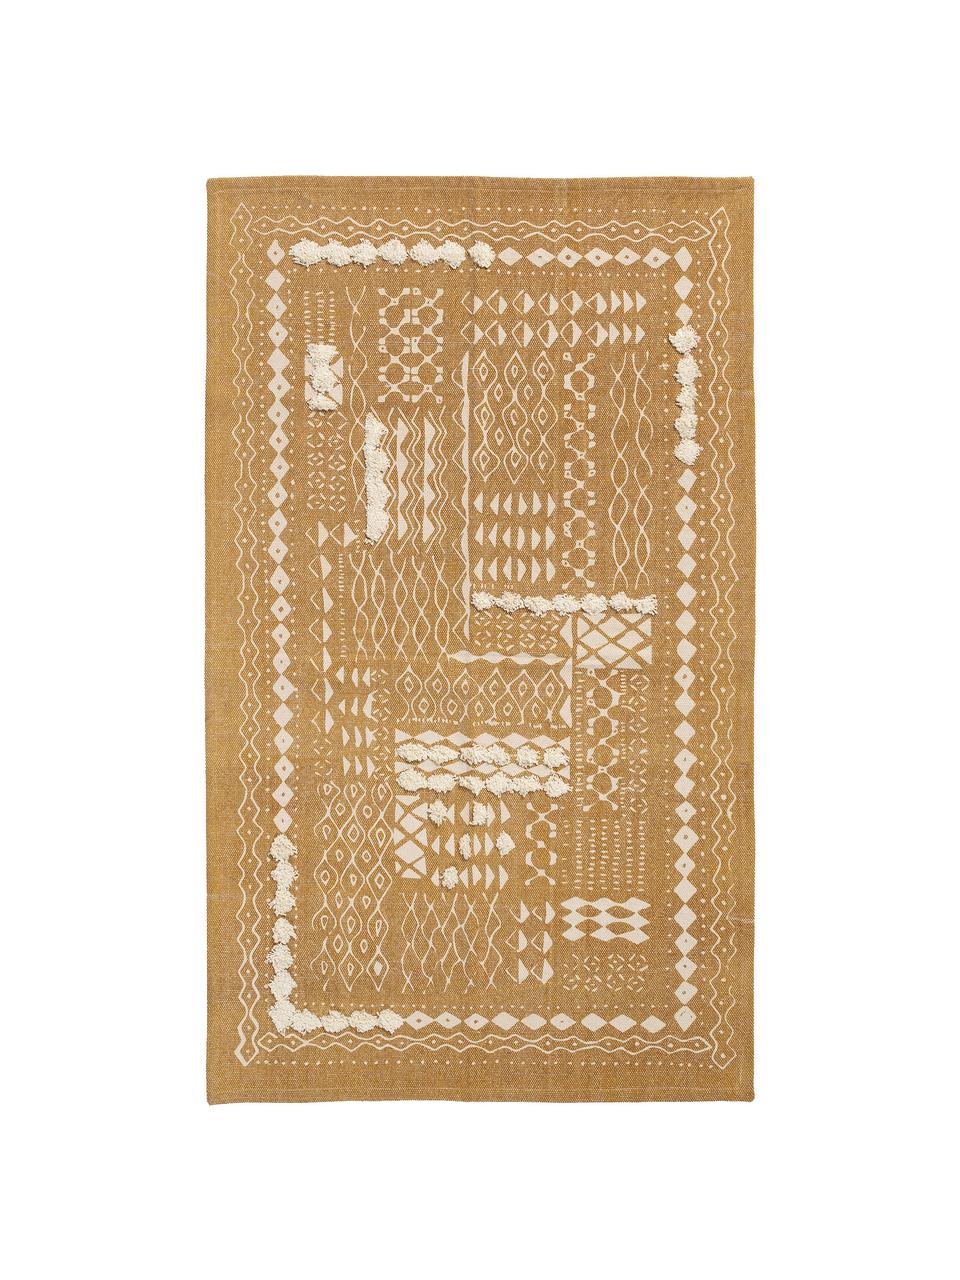 Dywan z bawełny z wypukła strukturą w stylu boho  Boa, 100% bawełna, Żółty, biały, S 150 x D 200 cm (Rozmiar S)